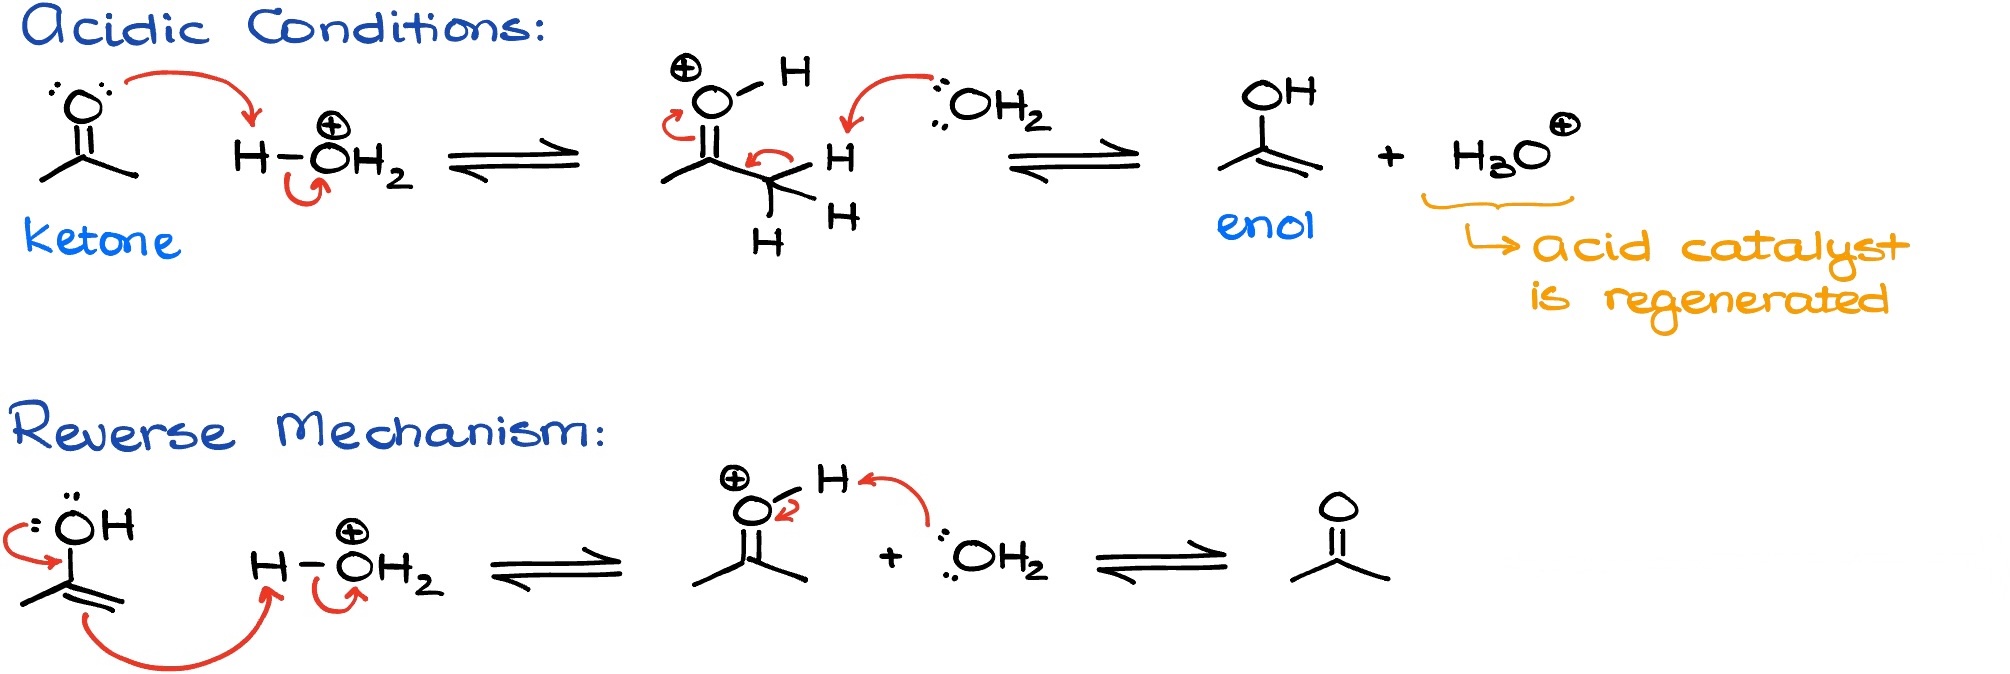 keto-enol tautomerism in acidic conditions